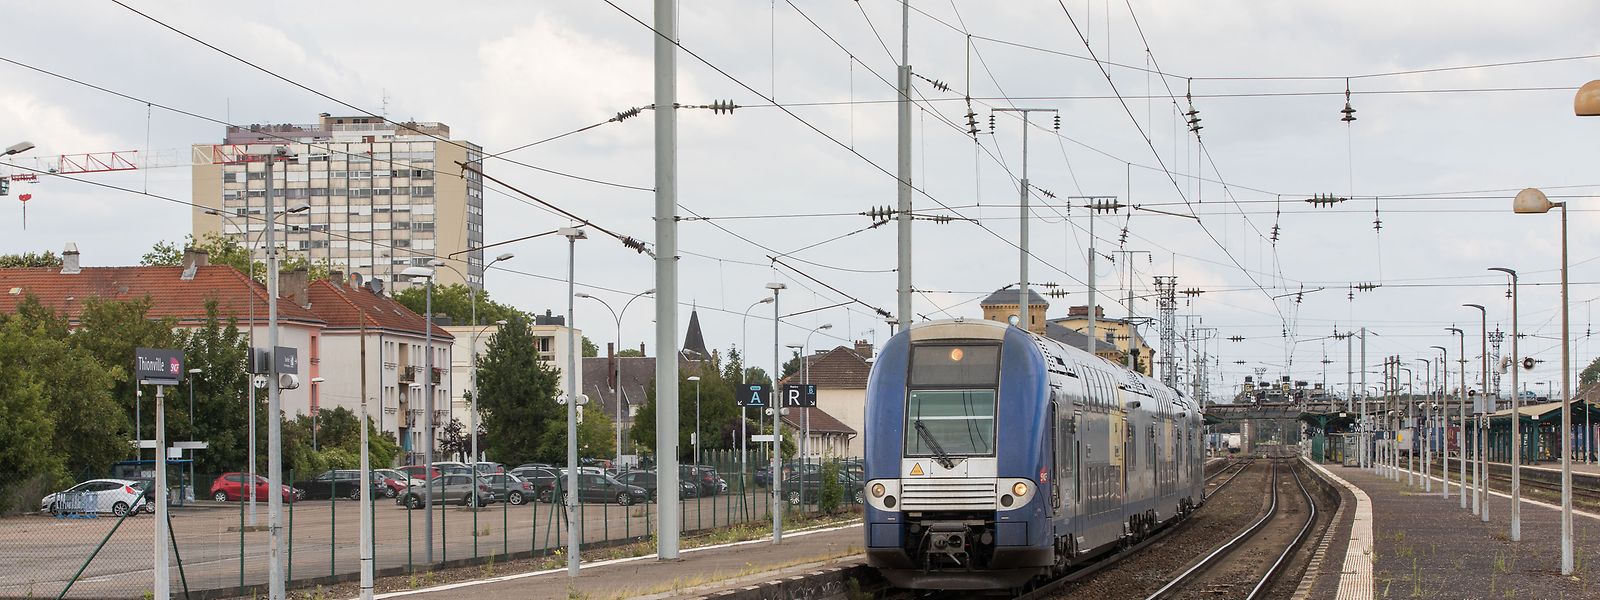 Un mouvement social local devait occasionner plusieurs suppressions de trains entre Metz et Luxembourg.